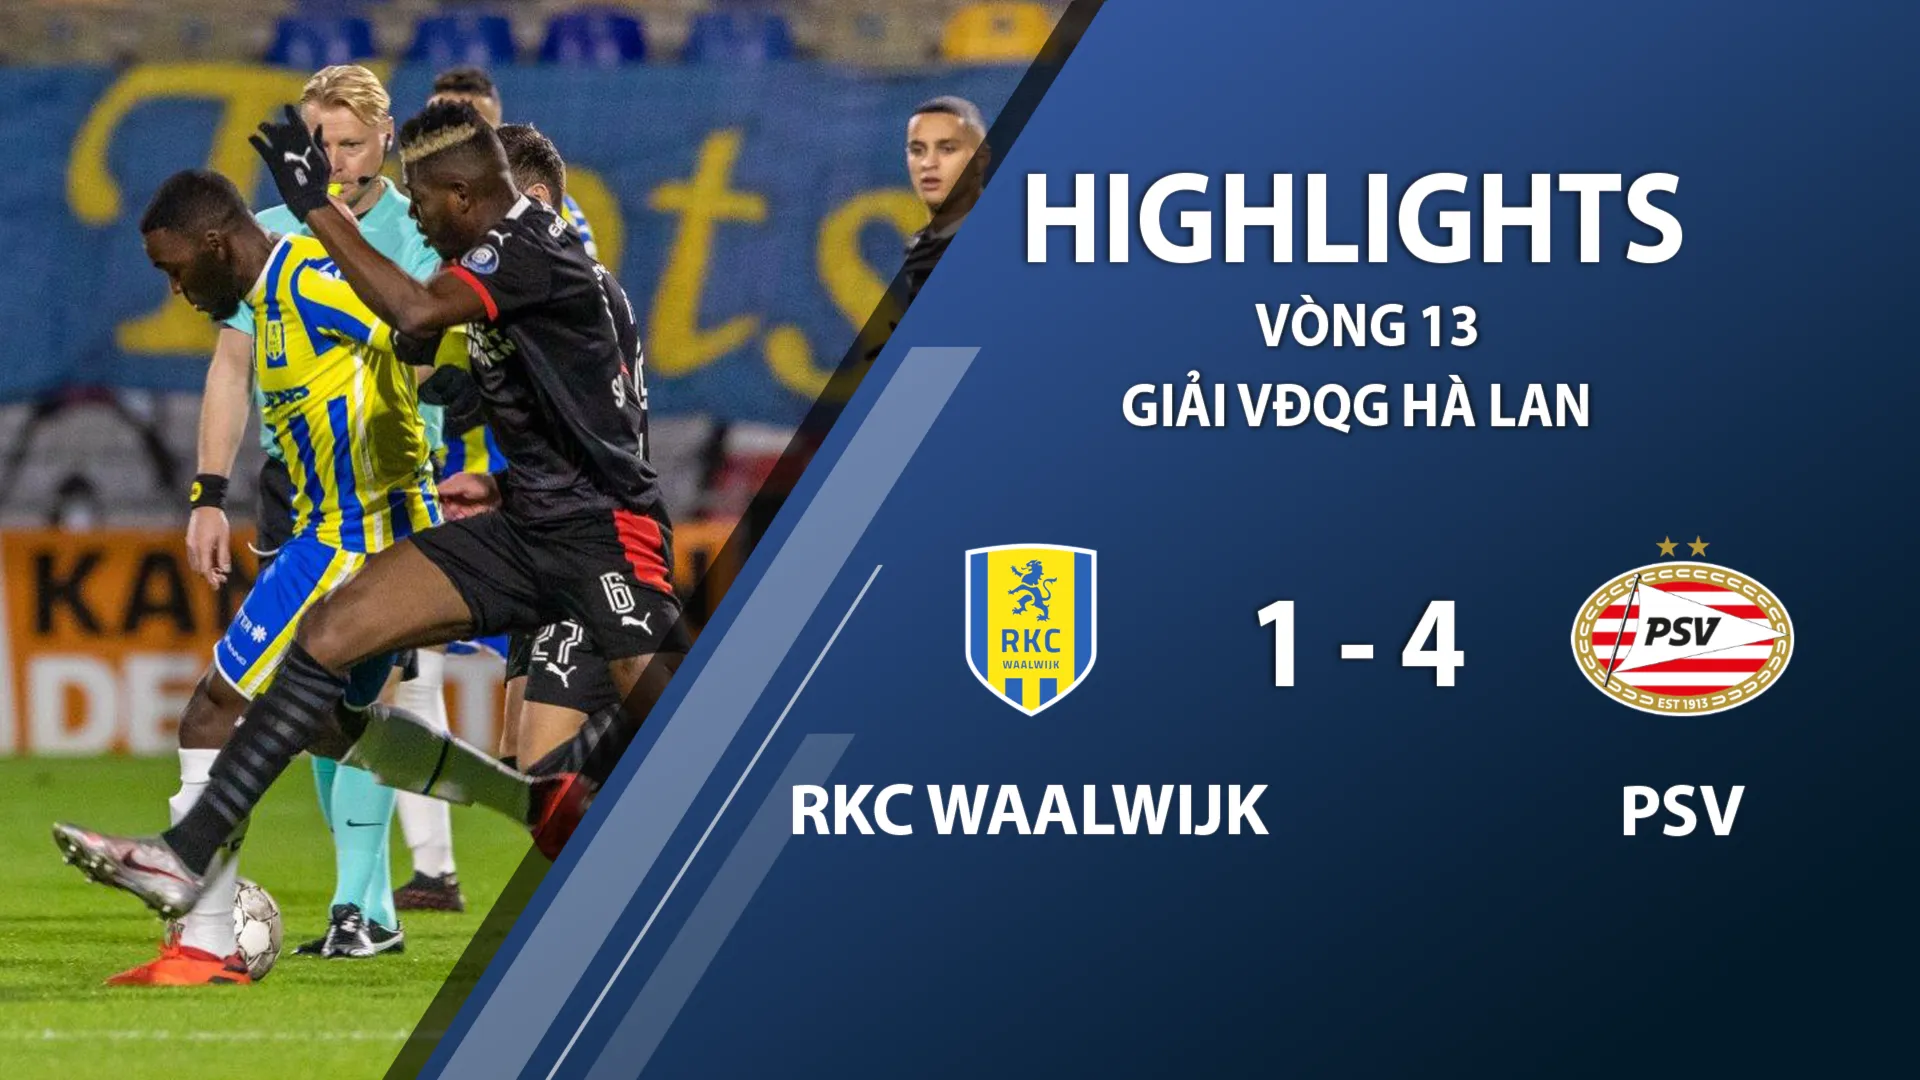 Highlights RKC Waalwijk 1-4 PSV Eindhoven (vòng 13 giải VĐQG Hà Lan 2020/21)